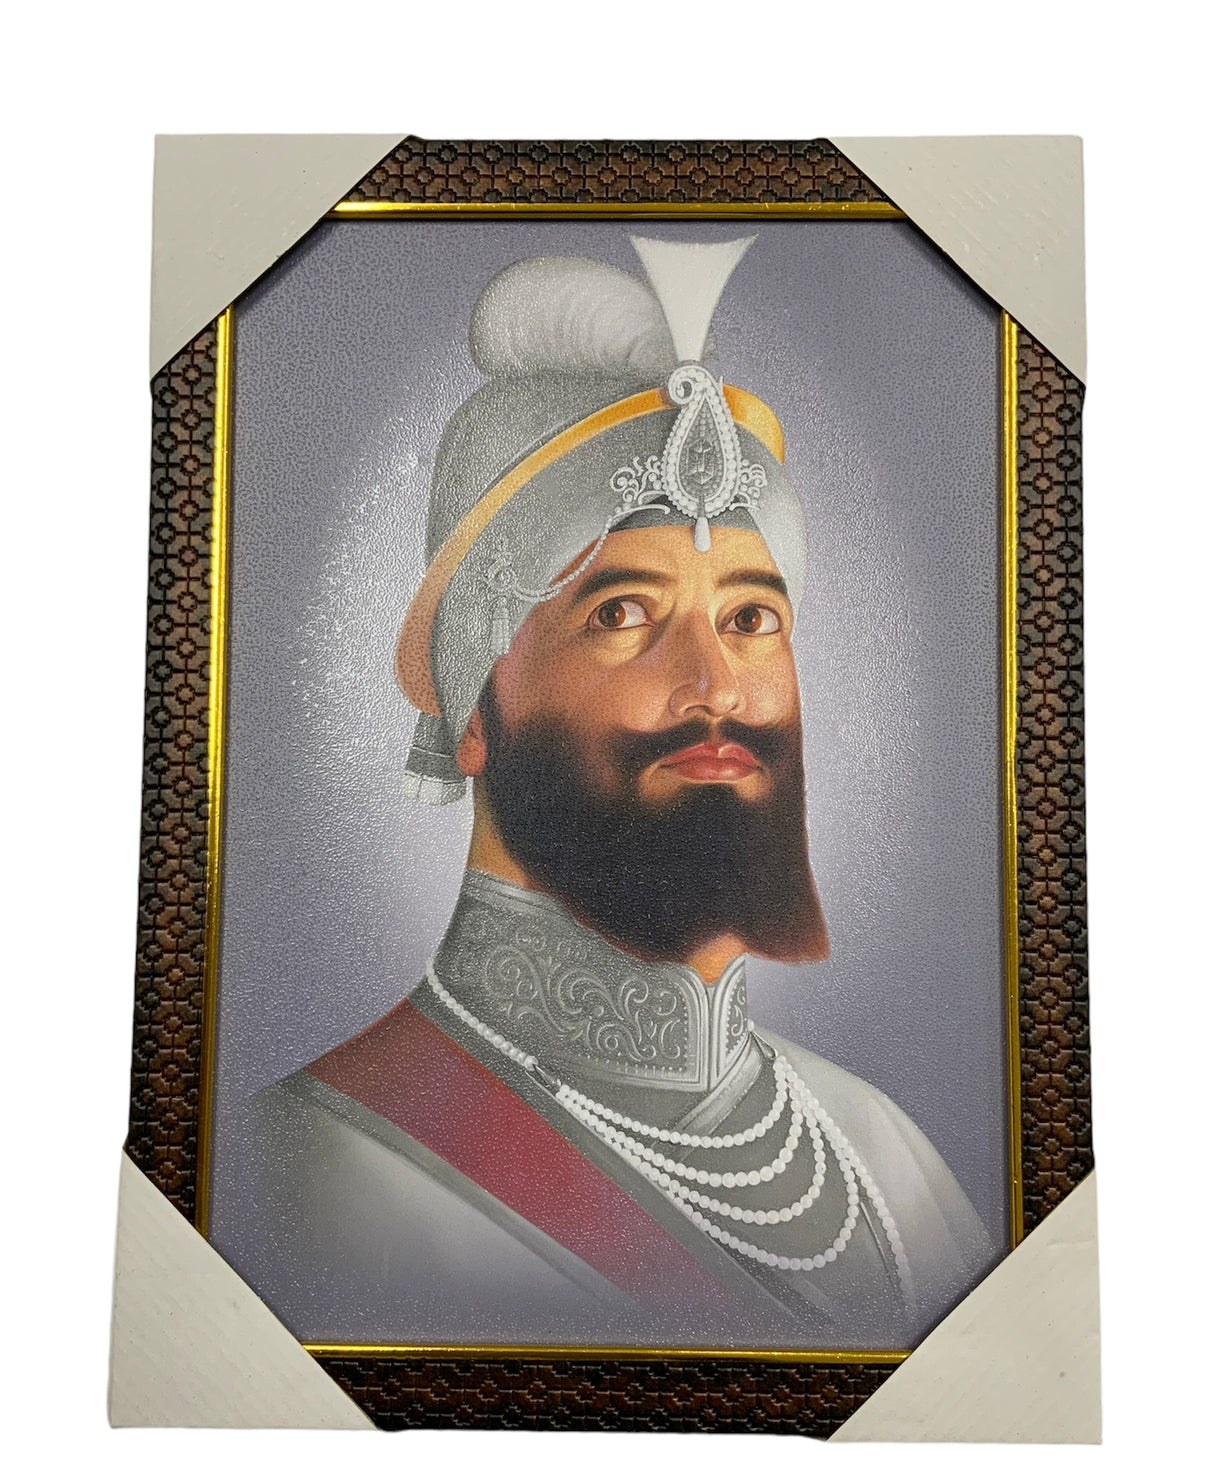 Guru Gobind Singh Ji Photo Frame (11X15]inches